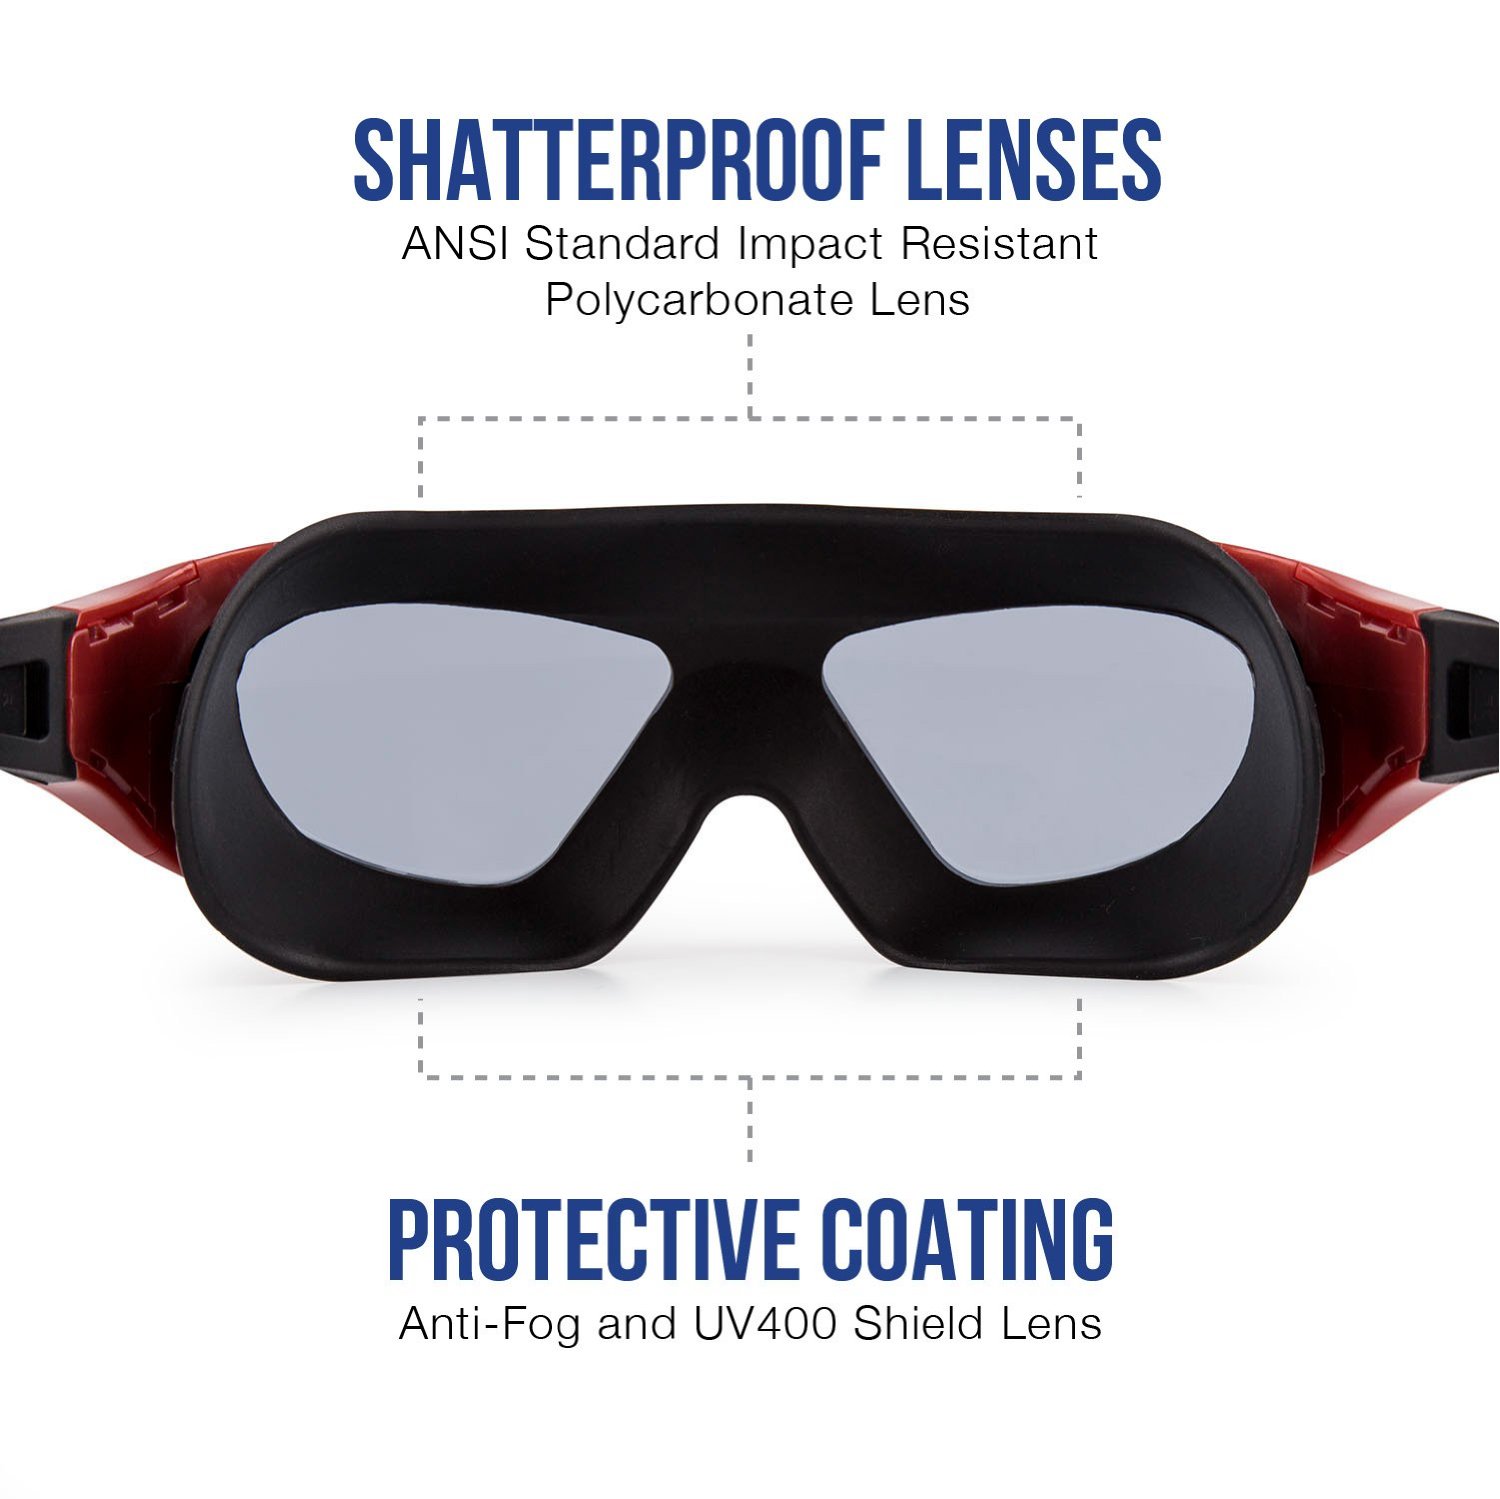 Kính bơi người lớn, kính bơi tráng gương tầm nhìn rộng 180 độ POPO (SBIG) mắt kiếng bơi tráng cản tia UV trong Bộ sưu tập Kính bơi nam, kính bơi nữ 2021